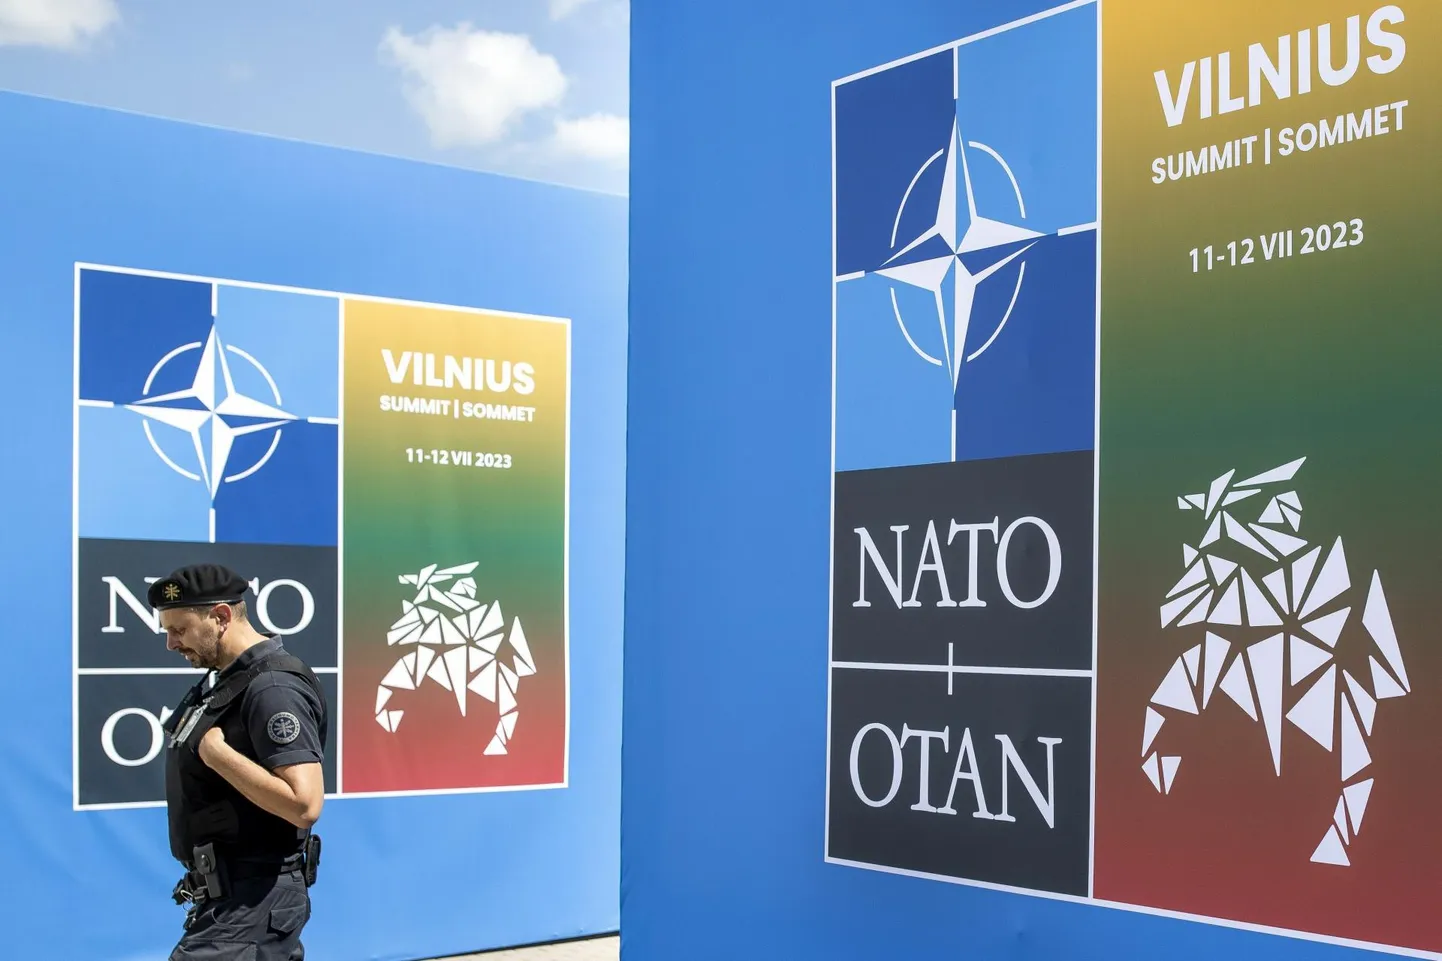 Korrakaitsja NATO Vilniuse tippkohtumise toimumispaigaks oleva LITEXPO seinte vahel. 